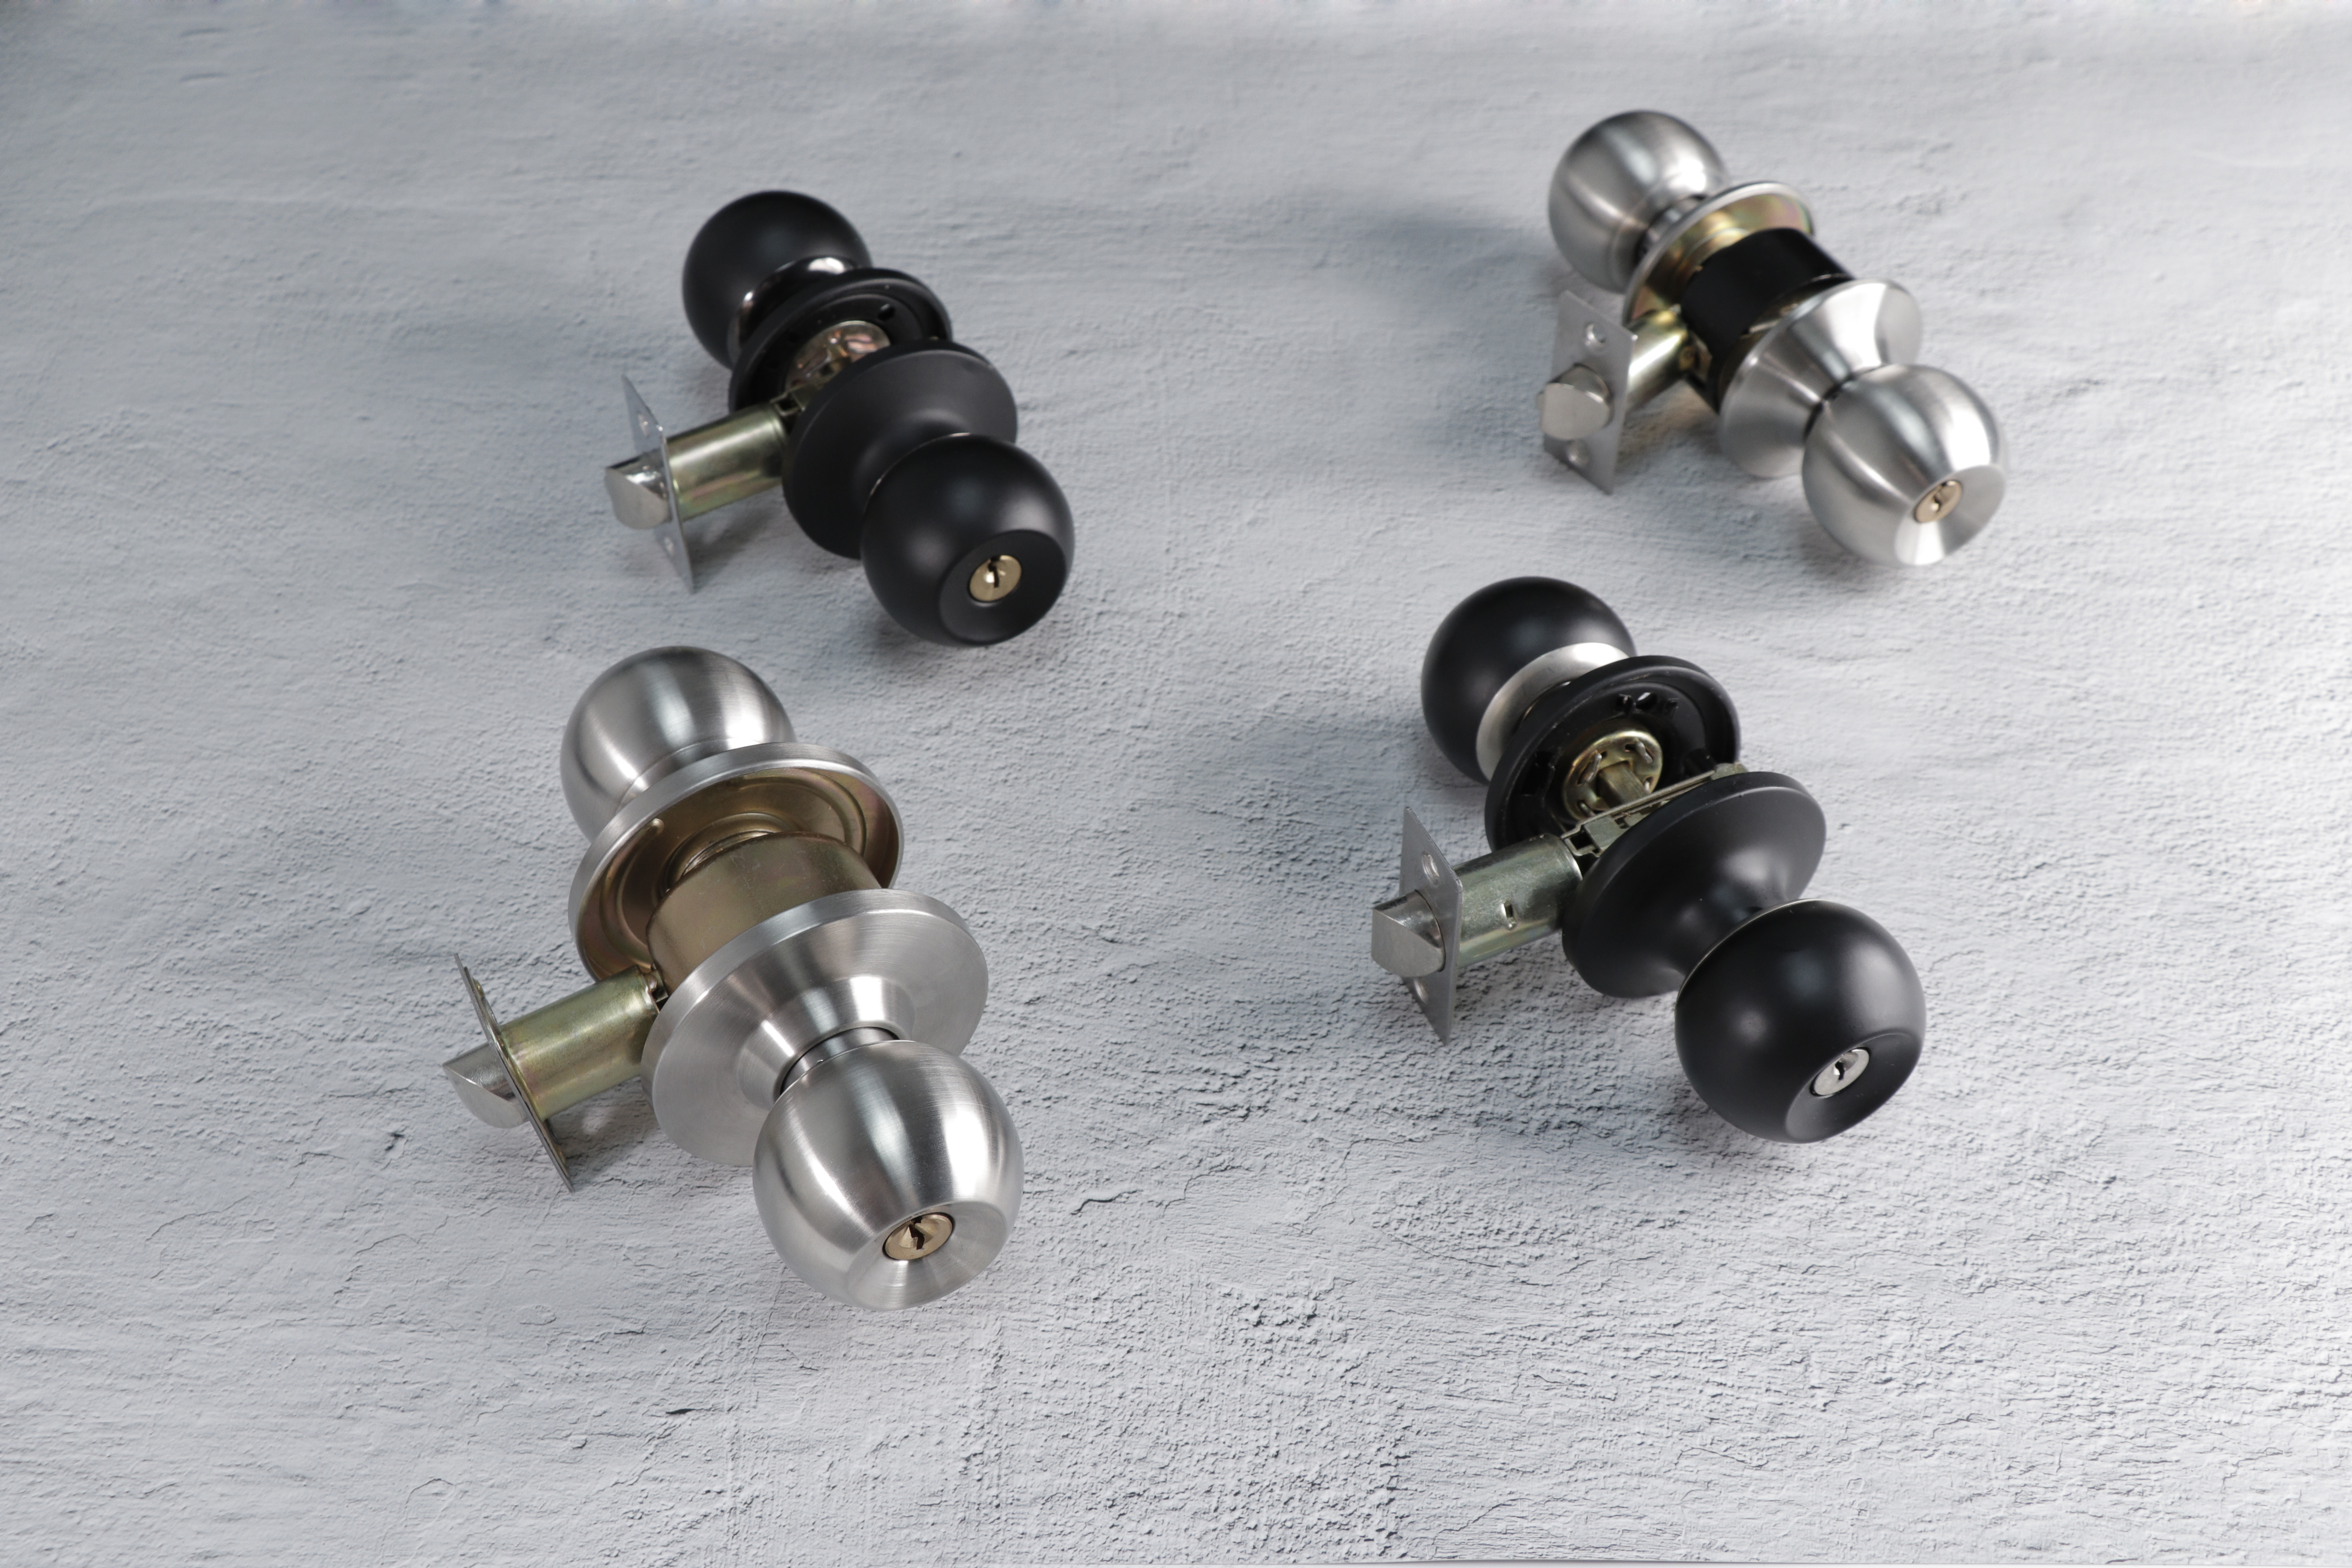 ANSI standaard buisvormige knop slot vierkante drive spindle speciaal ontwerp voor standaard tubulaire knop (6872AB-bk)